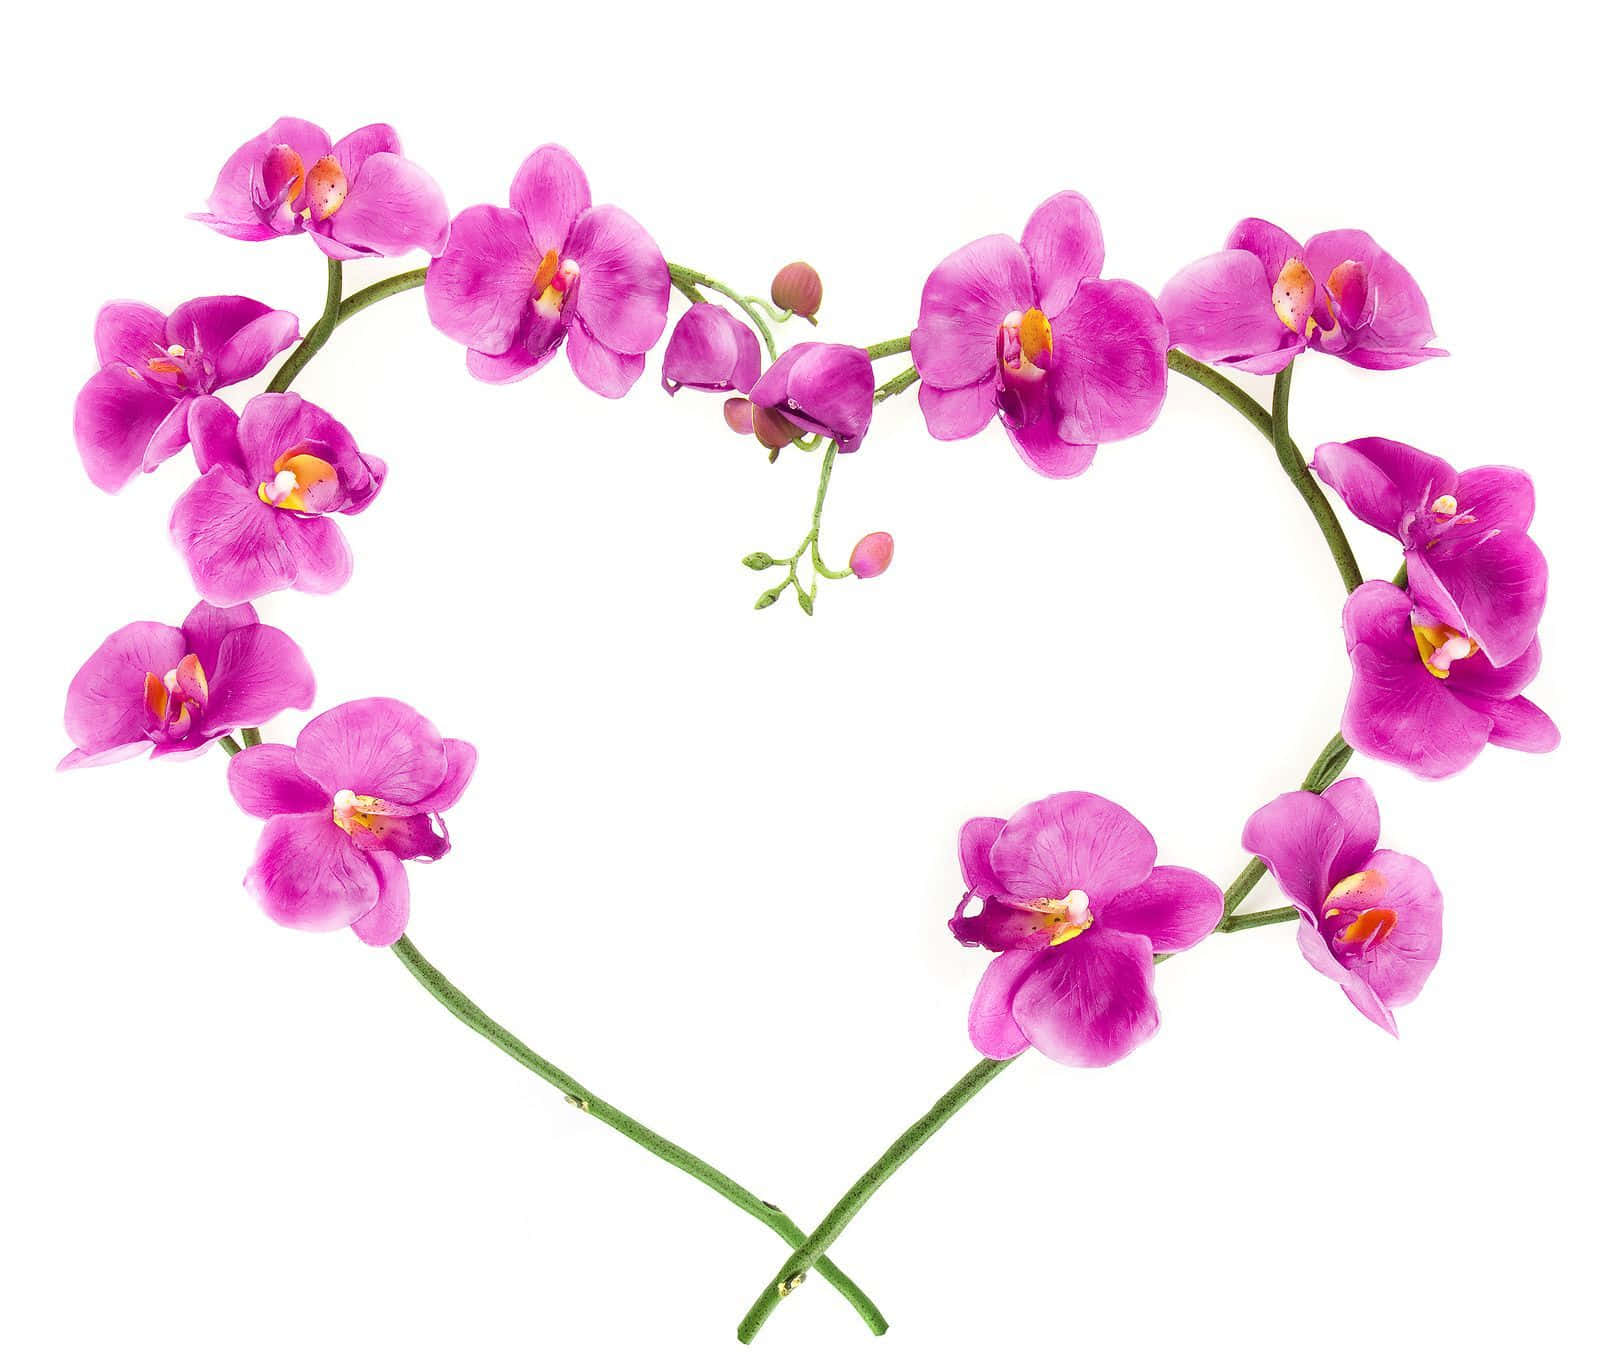 Elegantefioritura Di Orchidee In Un Giardino Mistico